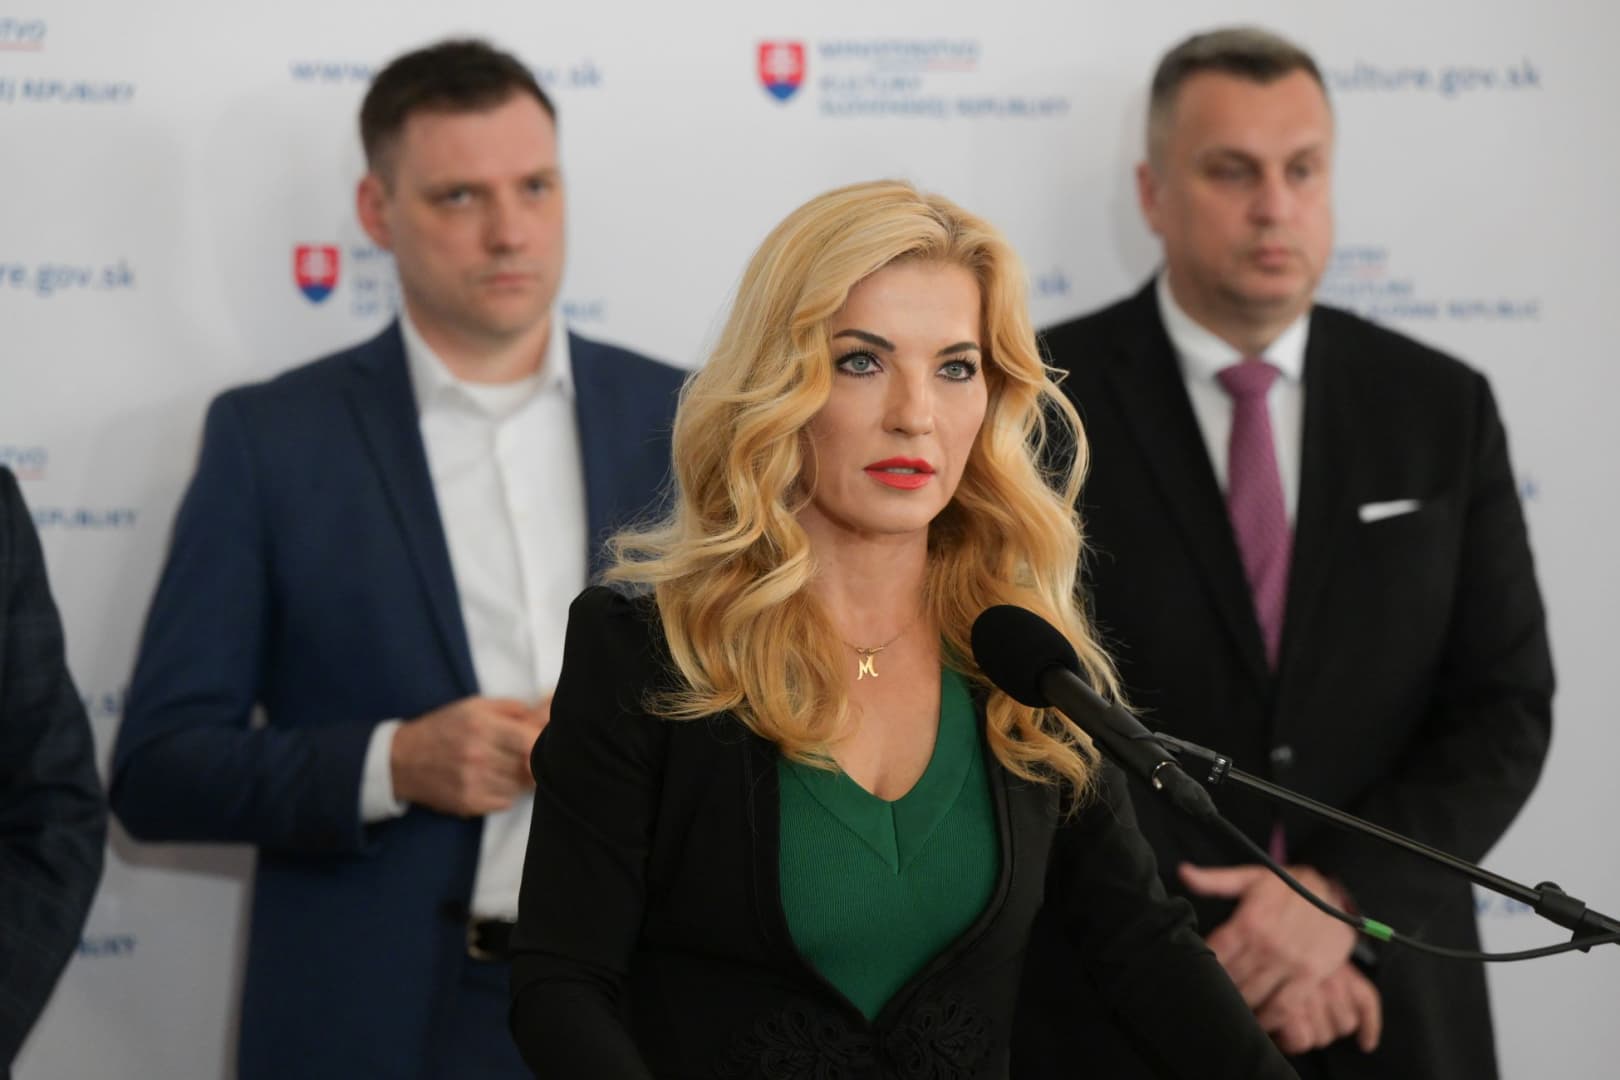 Šimkovičová az „alternatív információt” hiányolja a közmédiából, de nem magyarázta meg törvényjavaslatát, mert valaki „debilnek” nevezte Dankót